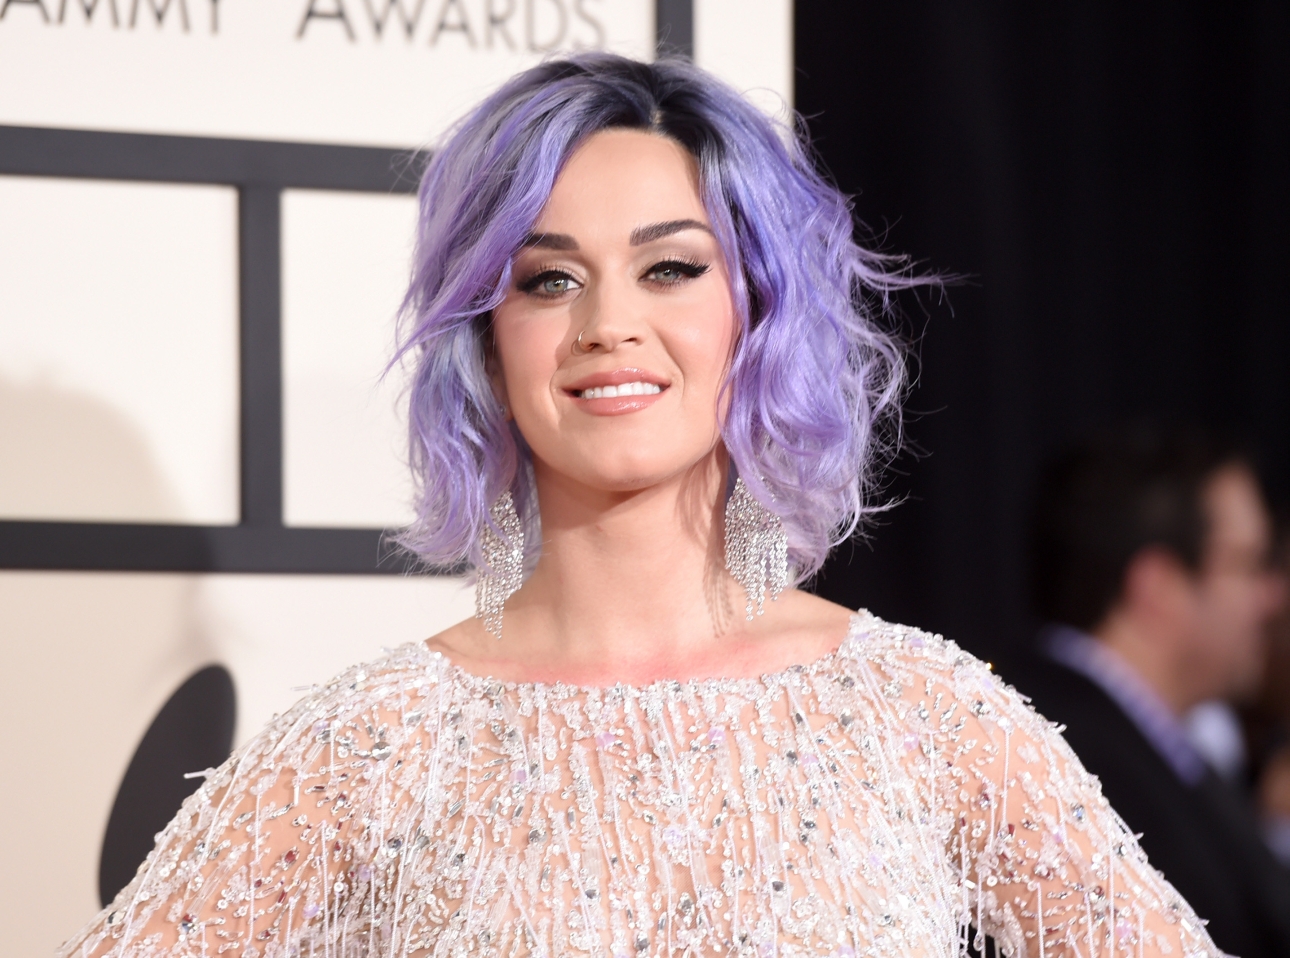 Katy Perry, Kim Kardashian, Taylor Swift i inne gwiazdy na gali Grammy 2015